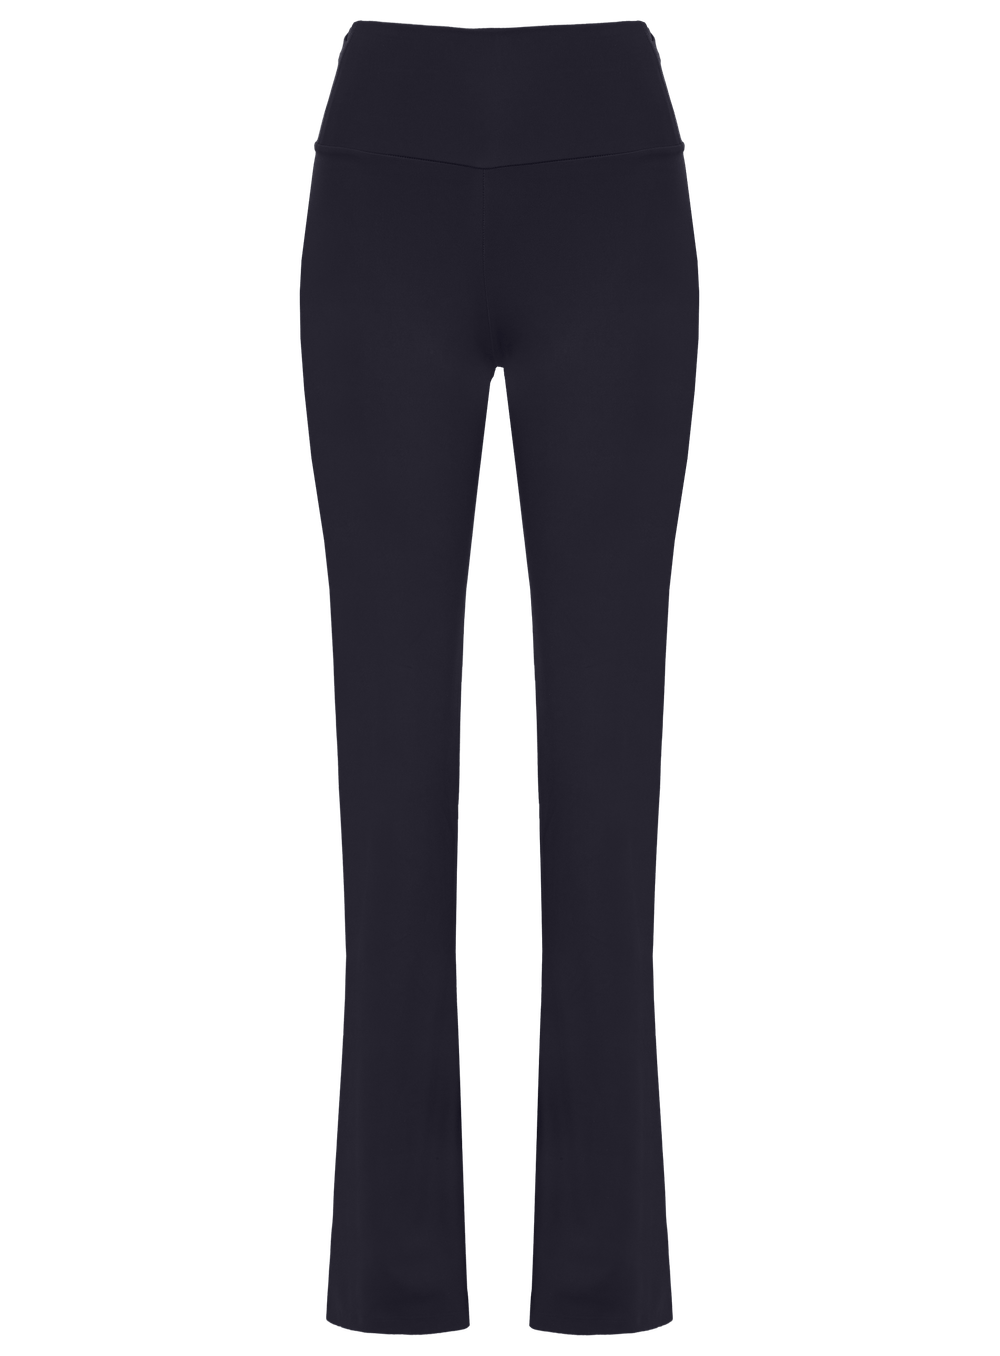 Navy Blue Fortune Pants  Pantalonas, Calças tailandesas, Calça de yoga